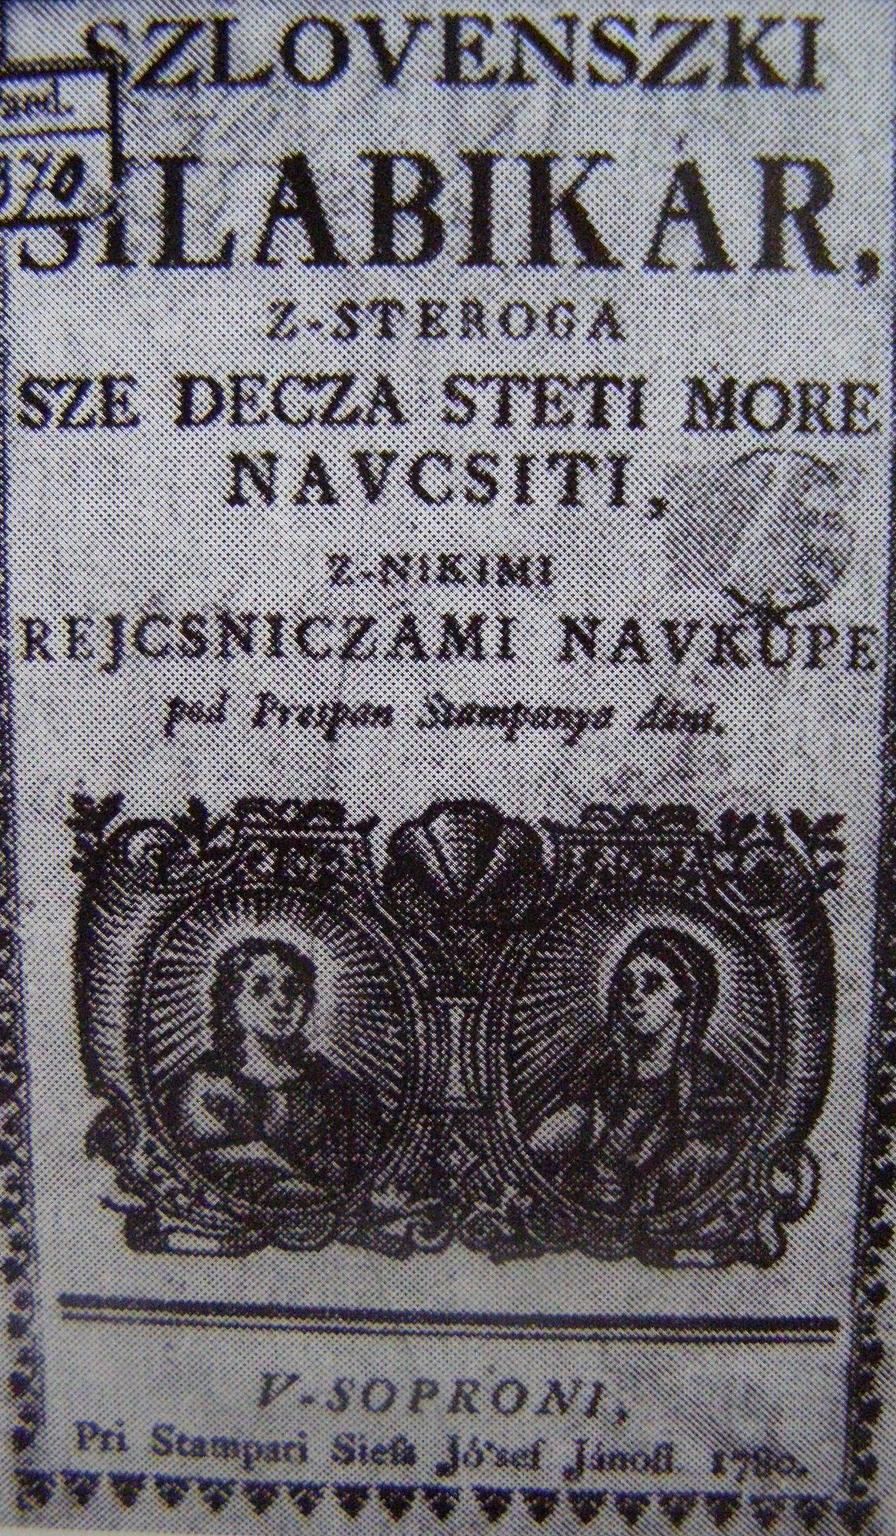 3 Szlovenszki silabikar 1780